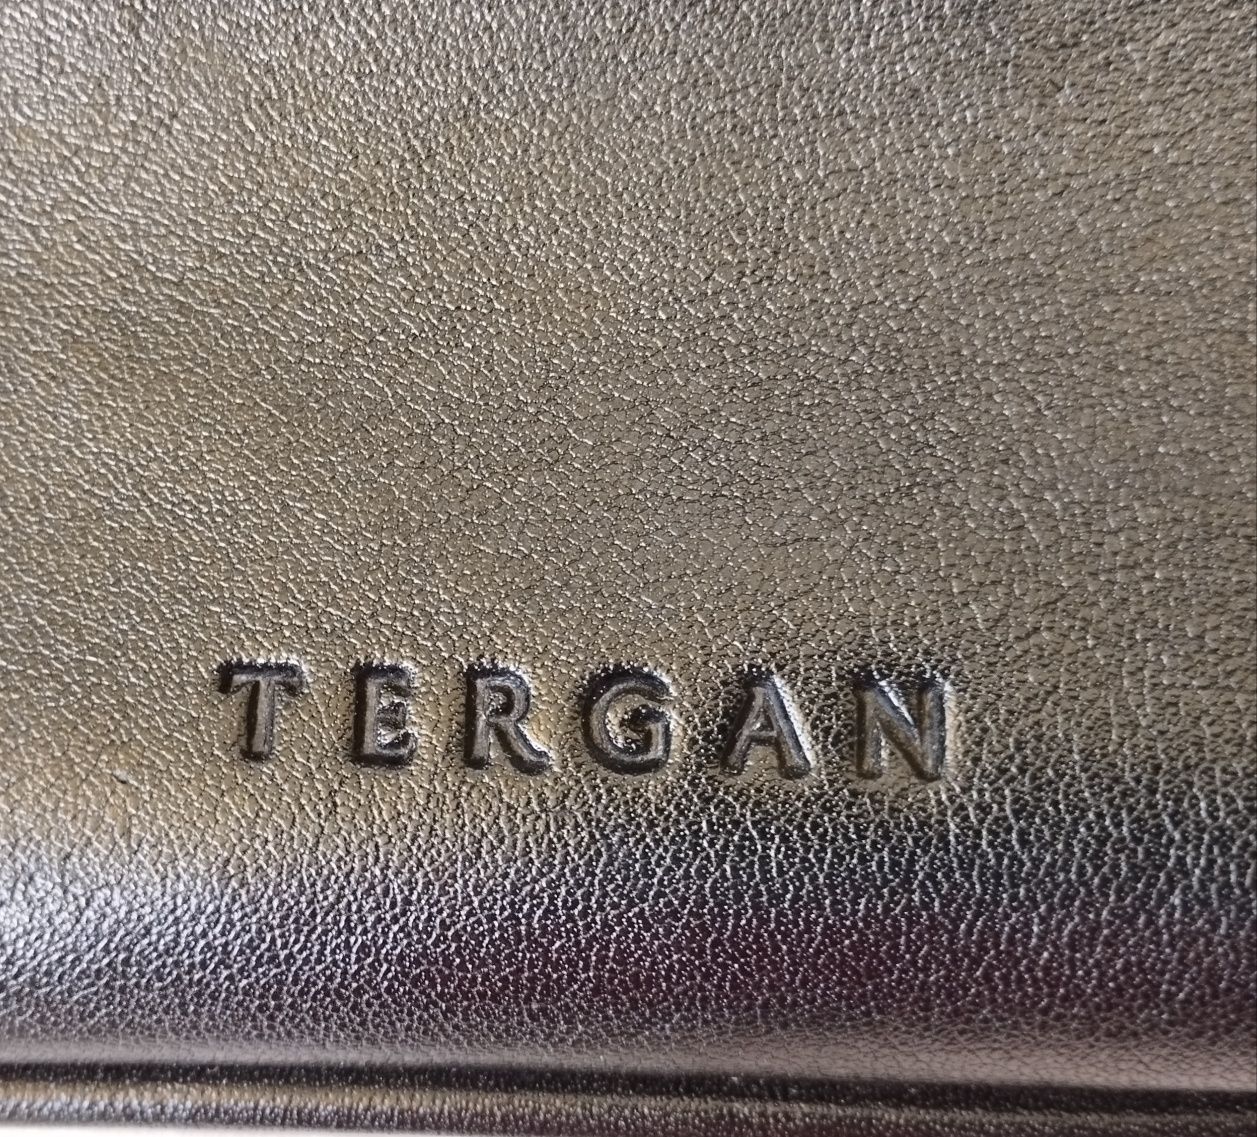 Мужская сумка через плечо,Tergan.